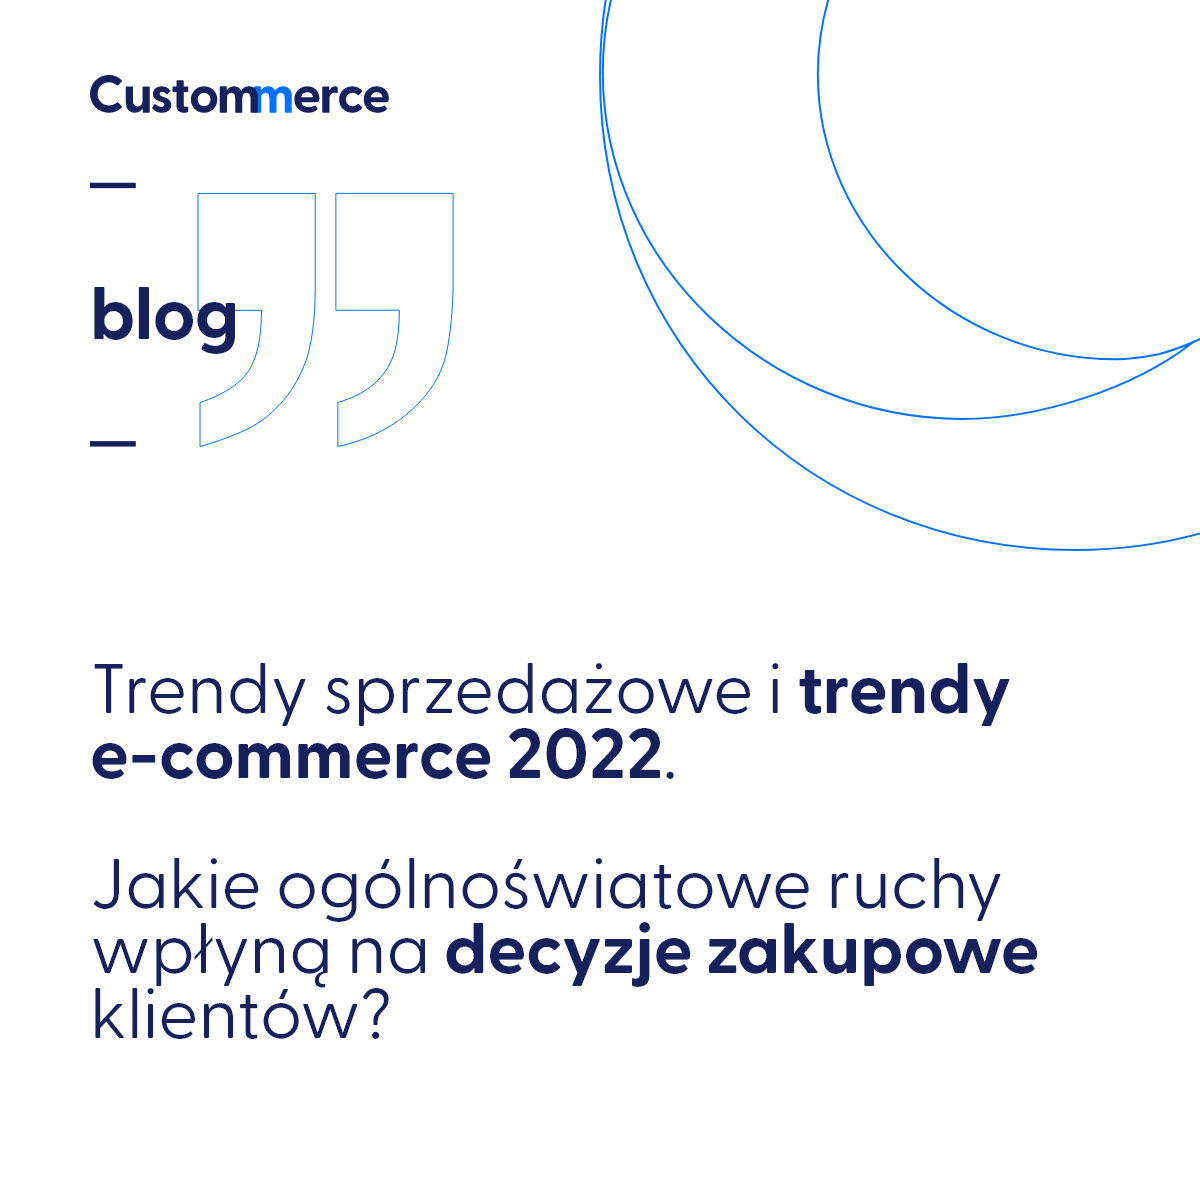 Trendy sprzedażowe i trendy e-commerce 2022. Jakie ogólnoświatowe ruchy wpłyną na decyzje zakupowe klientów?